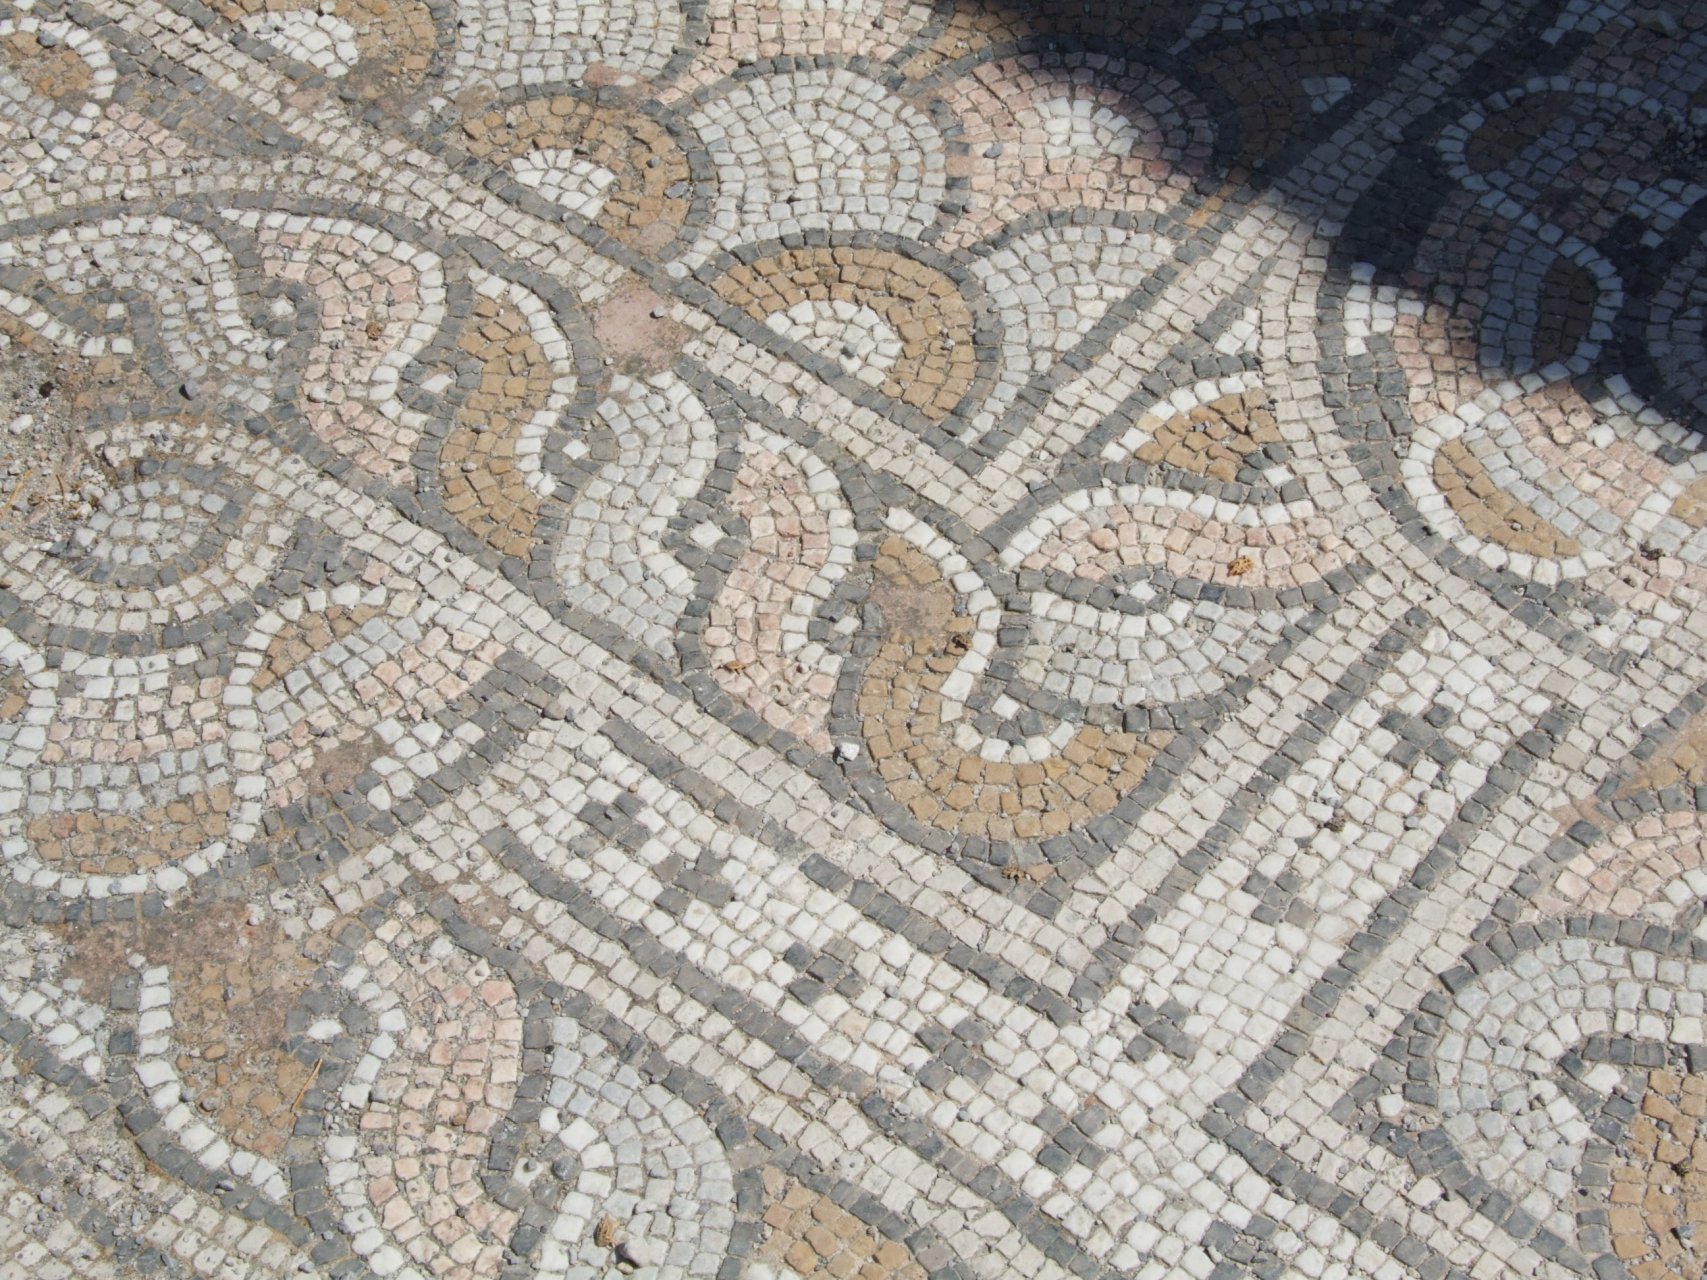 Południowo-wschodnie wykopaliska w Kos - mozaiki podłogowe znaleźć można w każdym zakątku wykopalisk